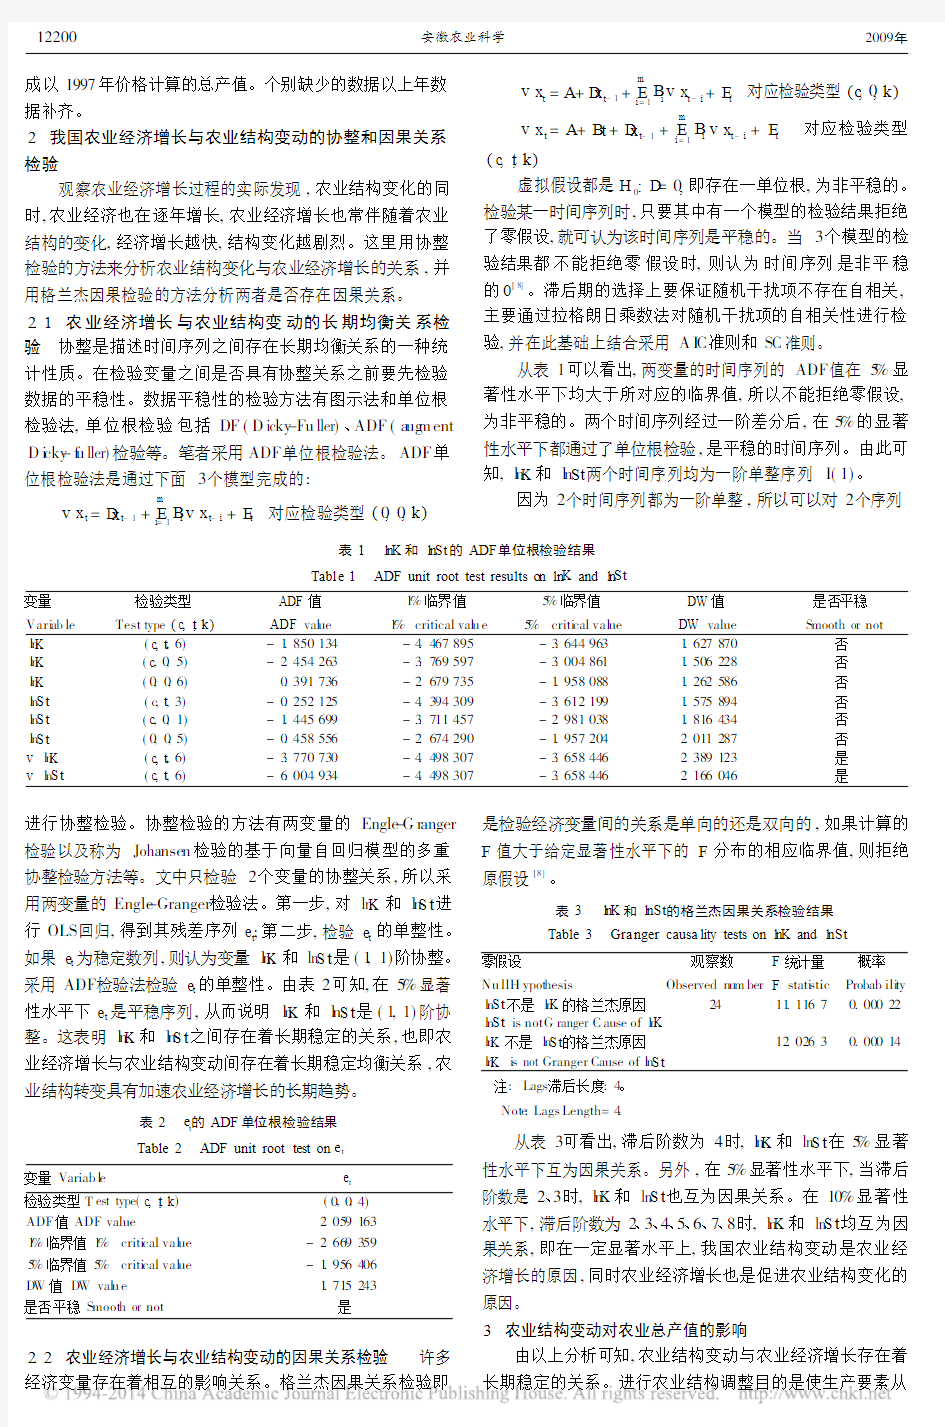 农业结构调整对农业经济增长影响的实证分析_刘成红